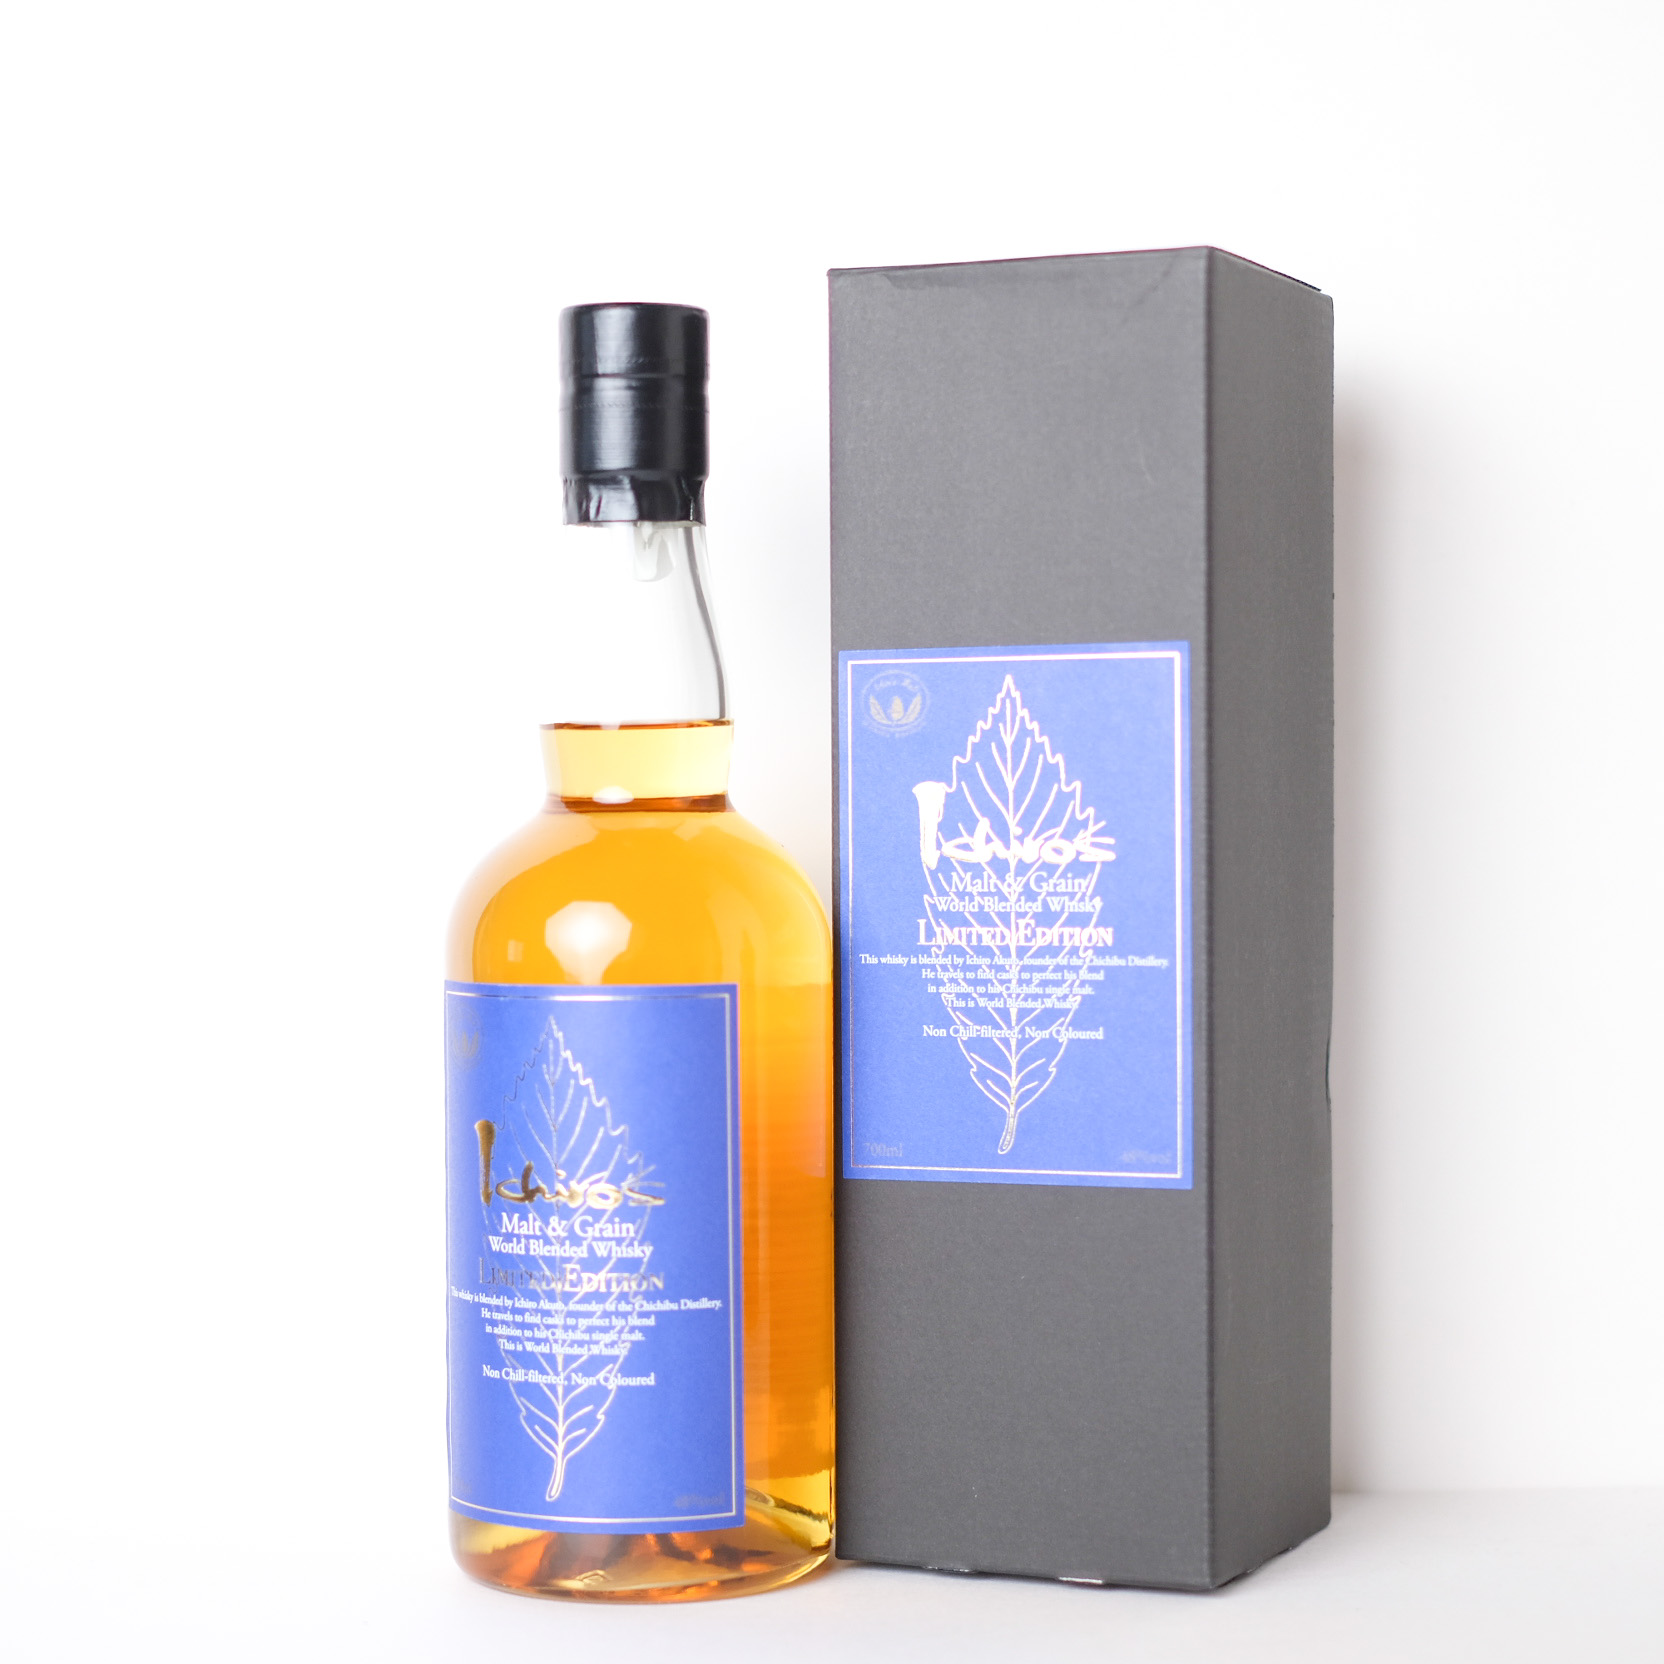 Ichiros Malt&Grain World Blended Whisky Limited Edition イチローズ モルト&グレーン ワールド ブレンデッド ウイスキー リミテッド エディション